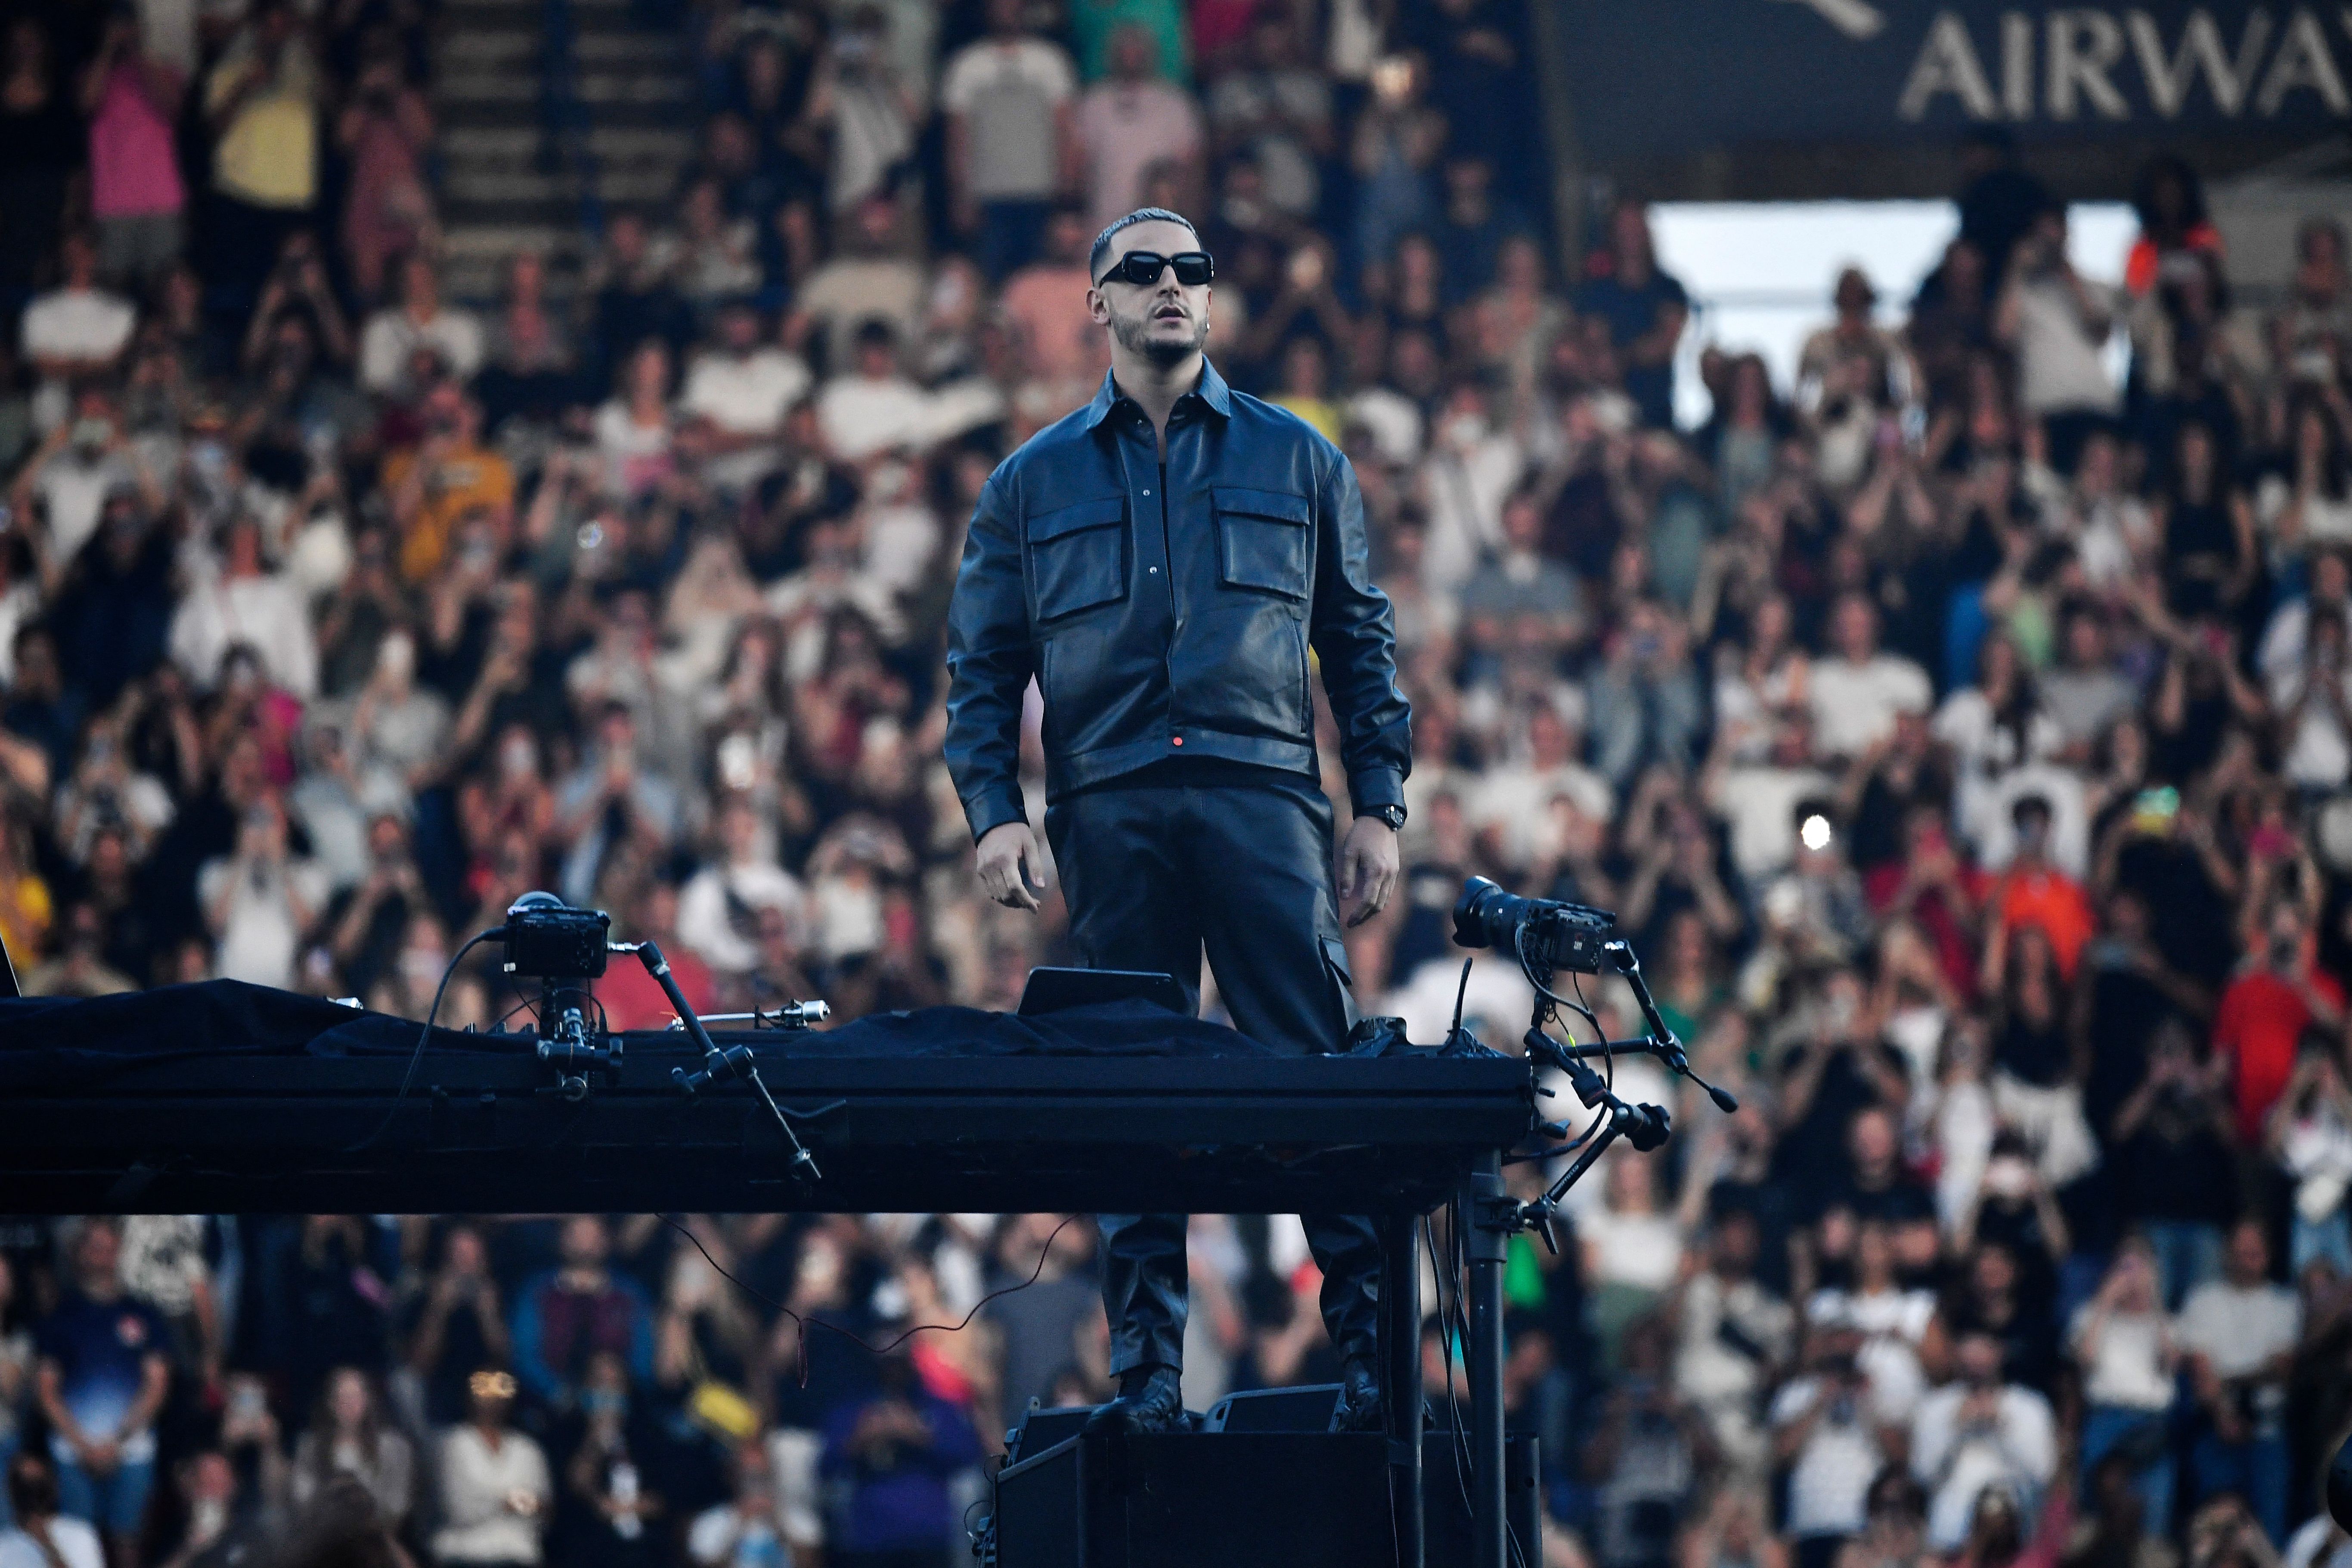 Dans le stade de son club de foot favori, DJ Snake a fait vibrer 60.000 personnes pour le premier concert...